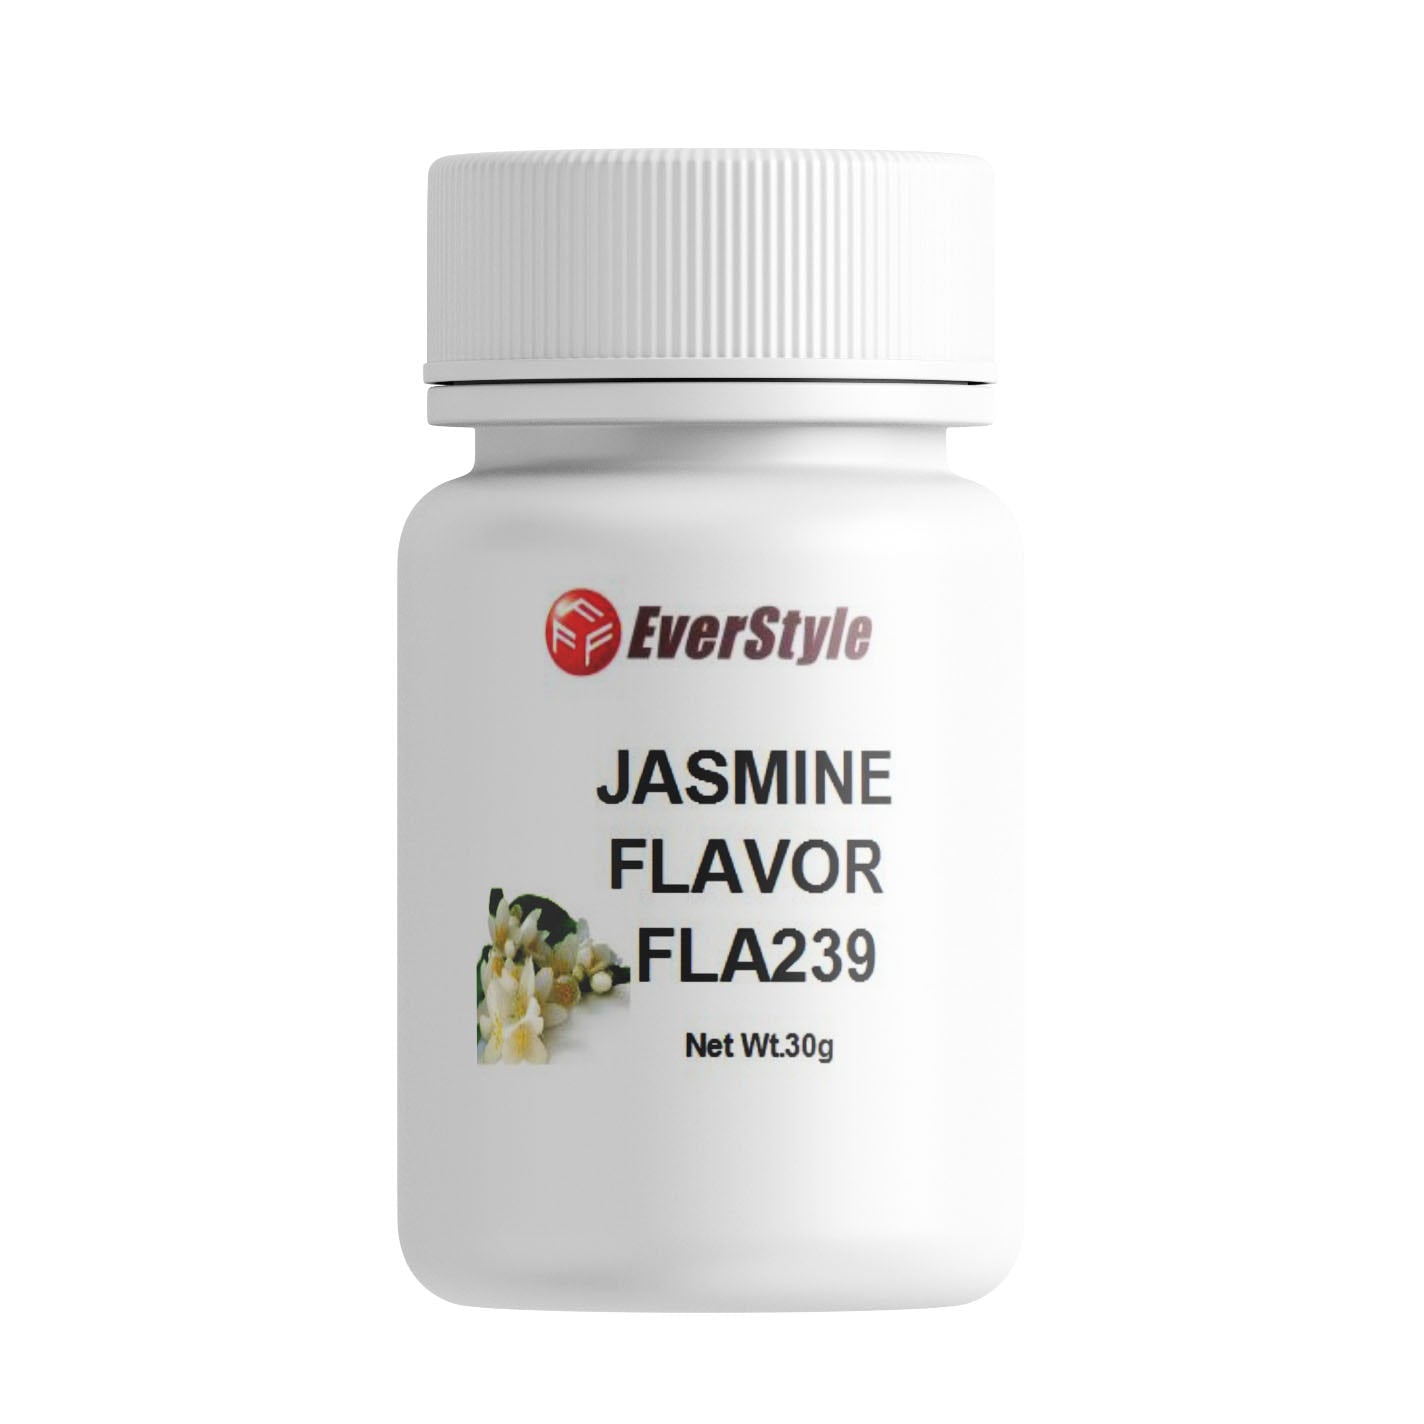 Everstyle Jasmine Flavor 30g (FLA239)